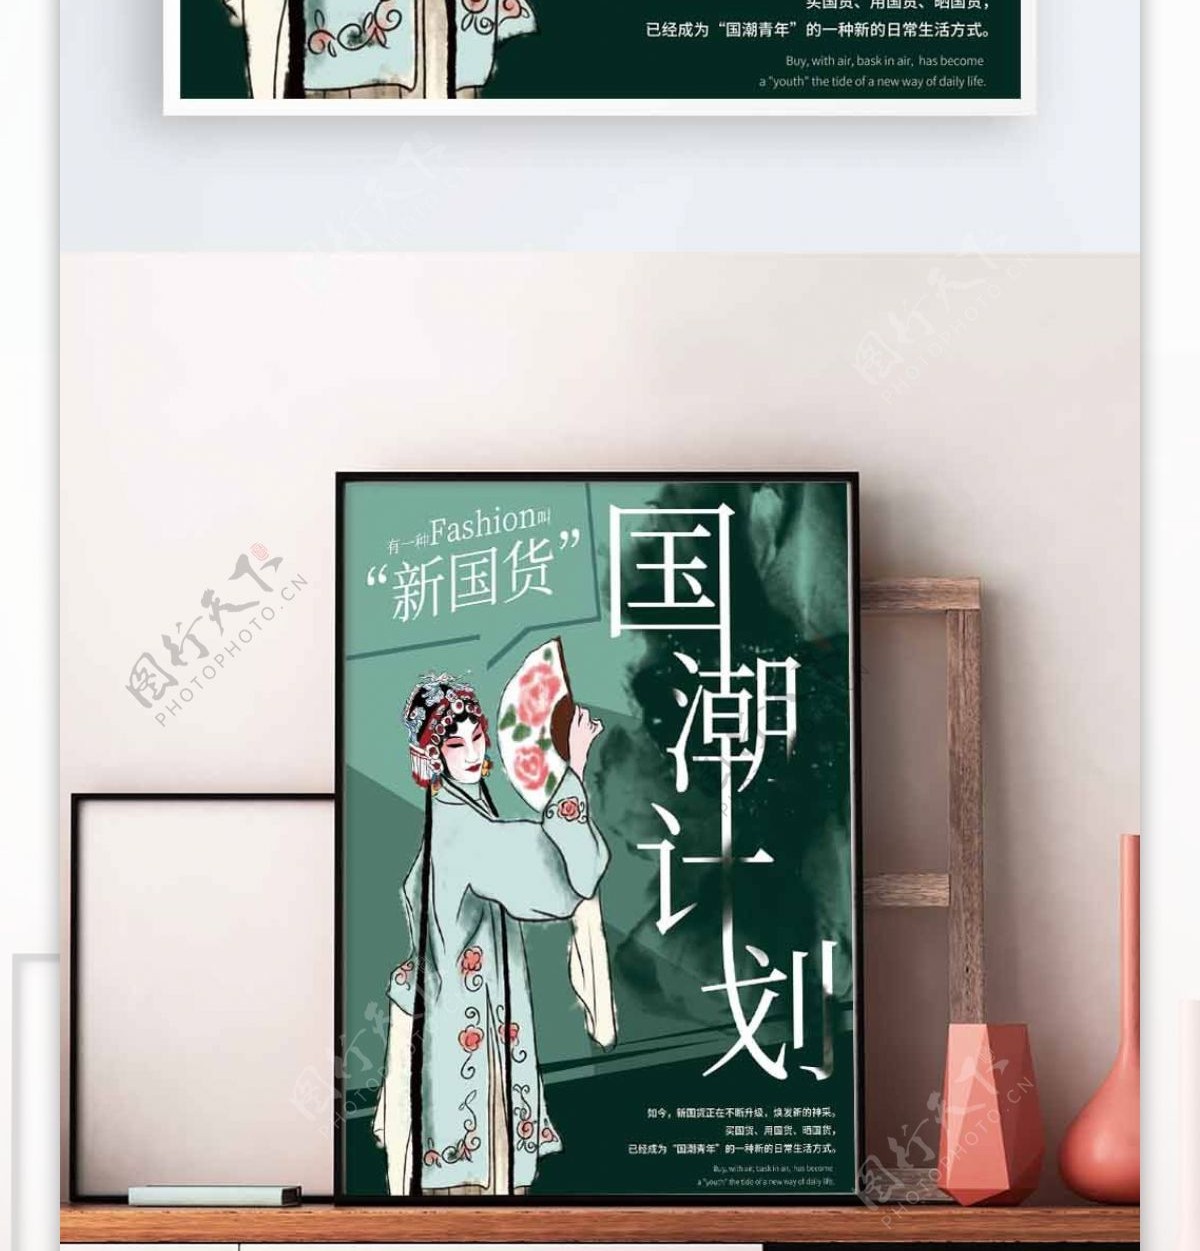 中国风戏曲国潮计划海报